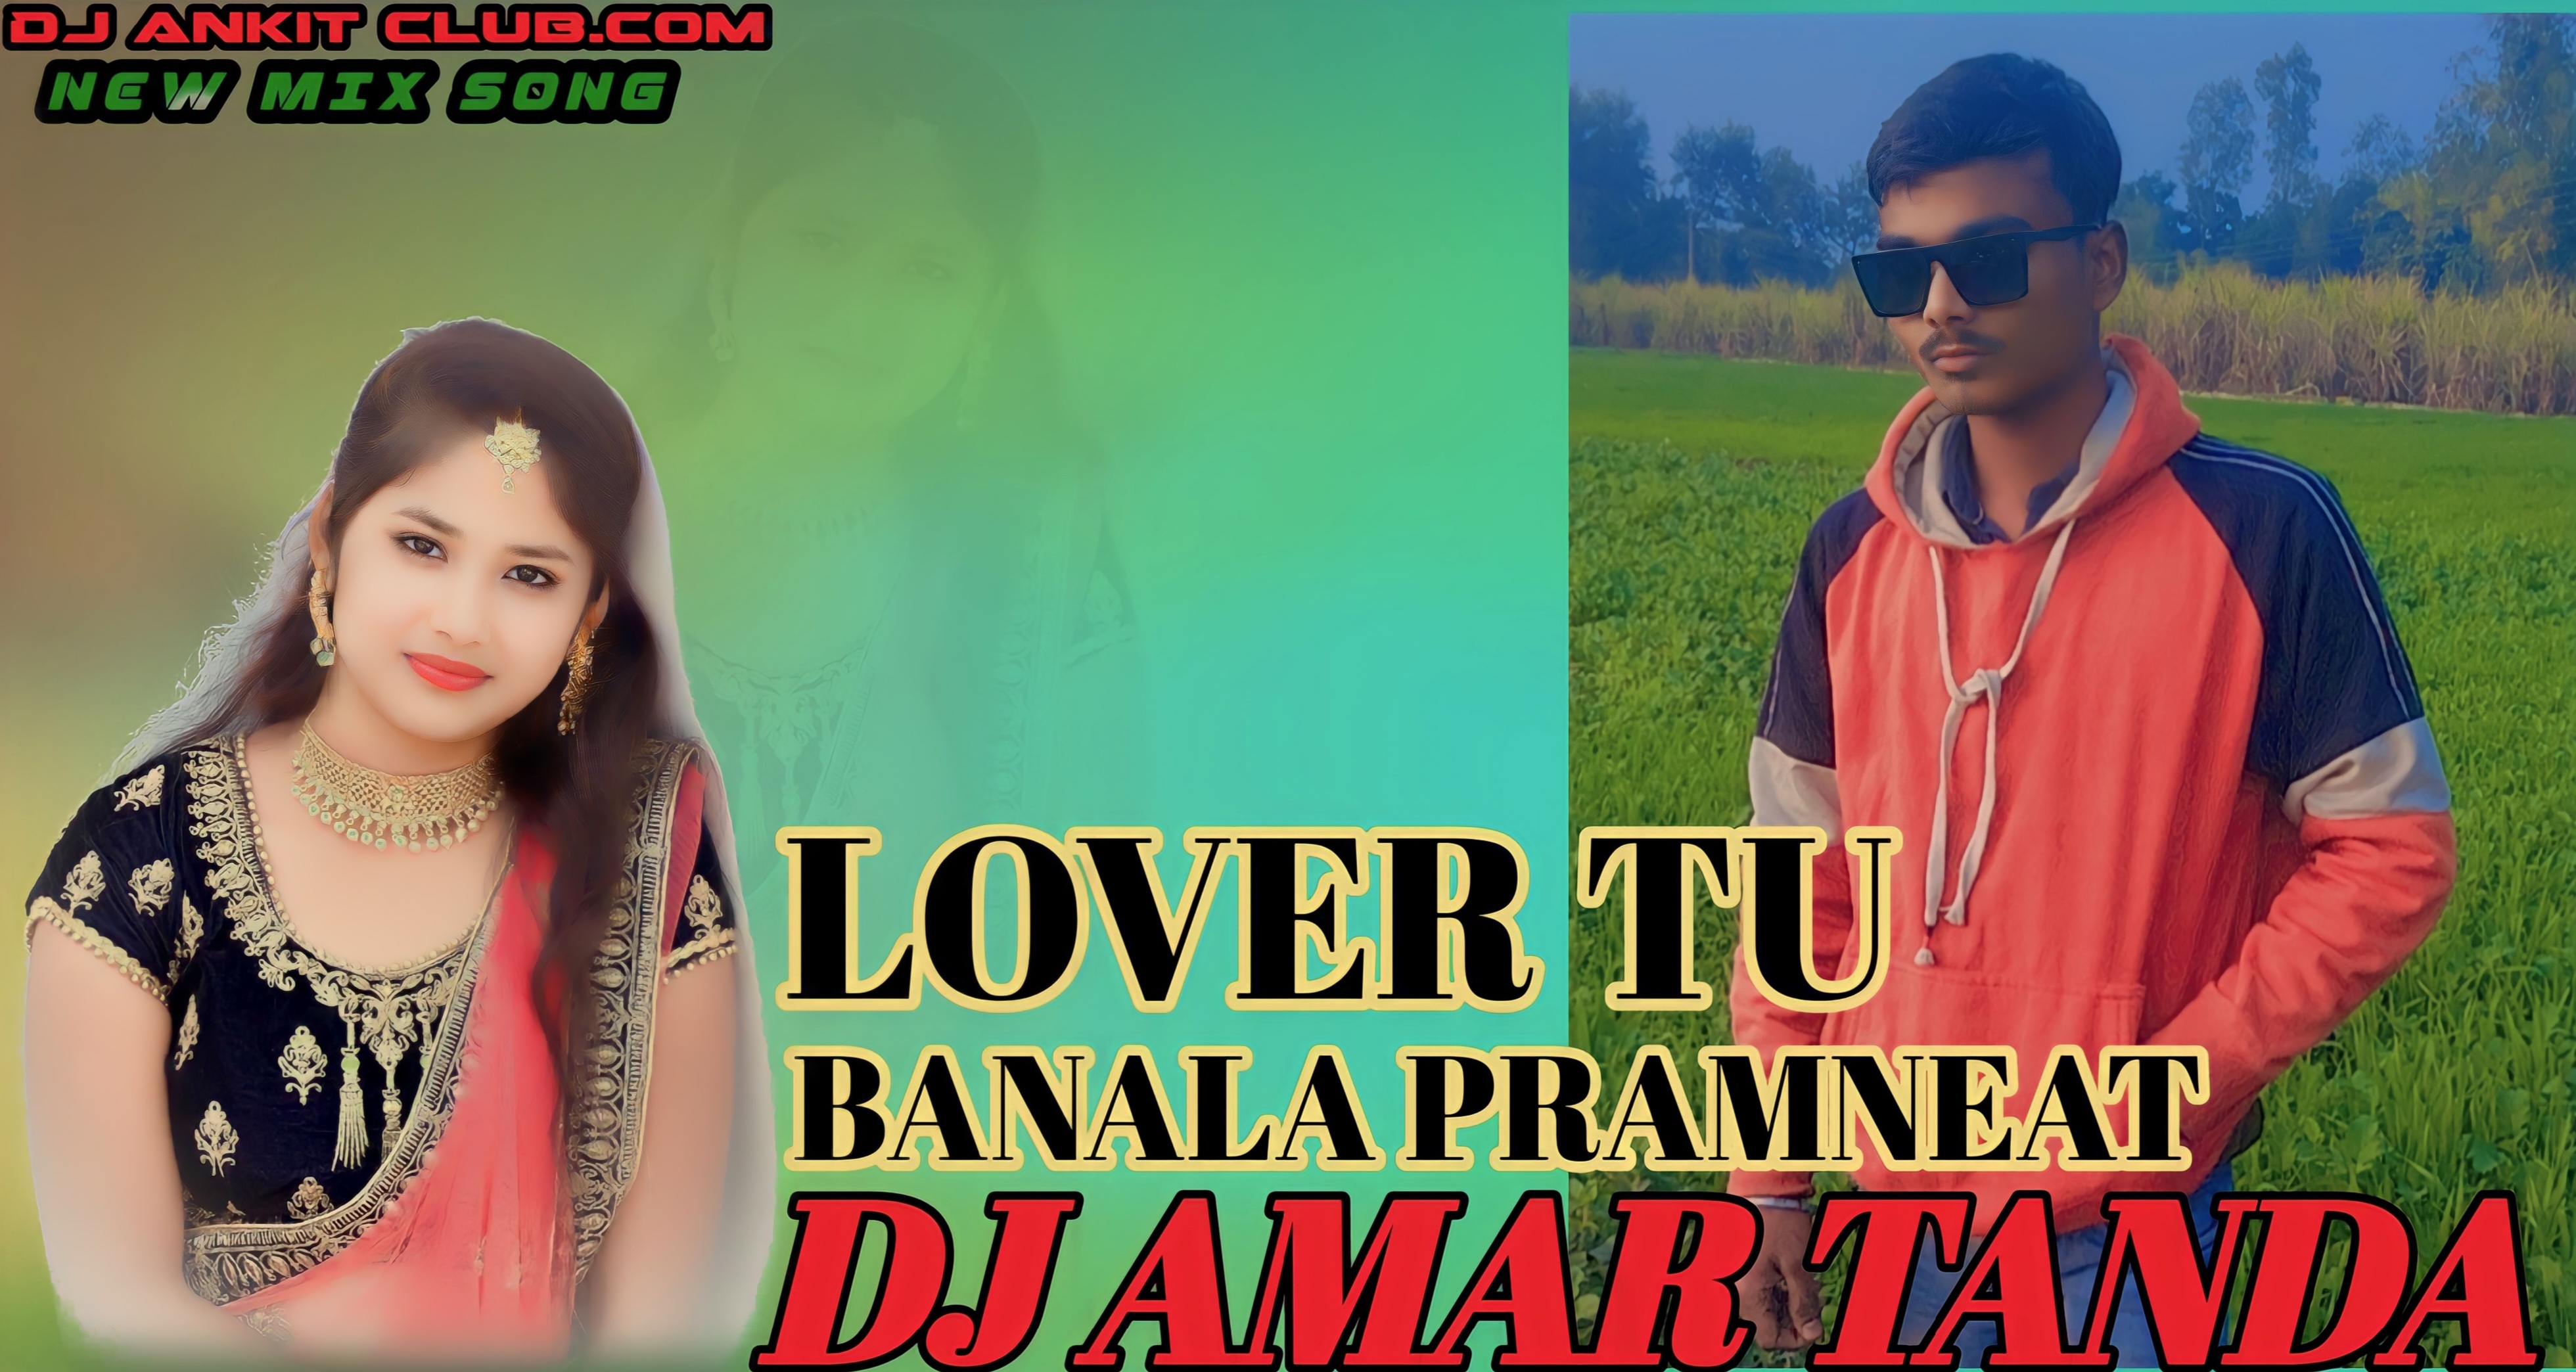 Lover Tu Banala Parmanent Mp3 Dj Remix Song { Gms Rupchik Remix } - Dj Amar Asopur Tanda